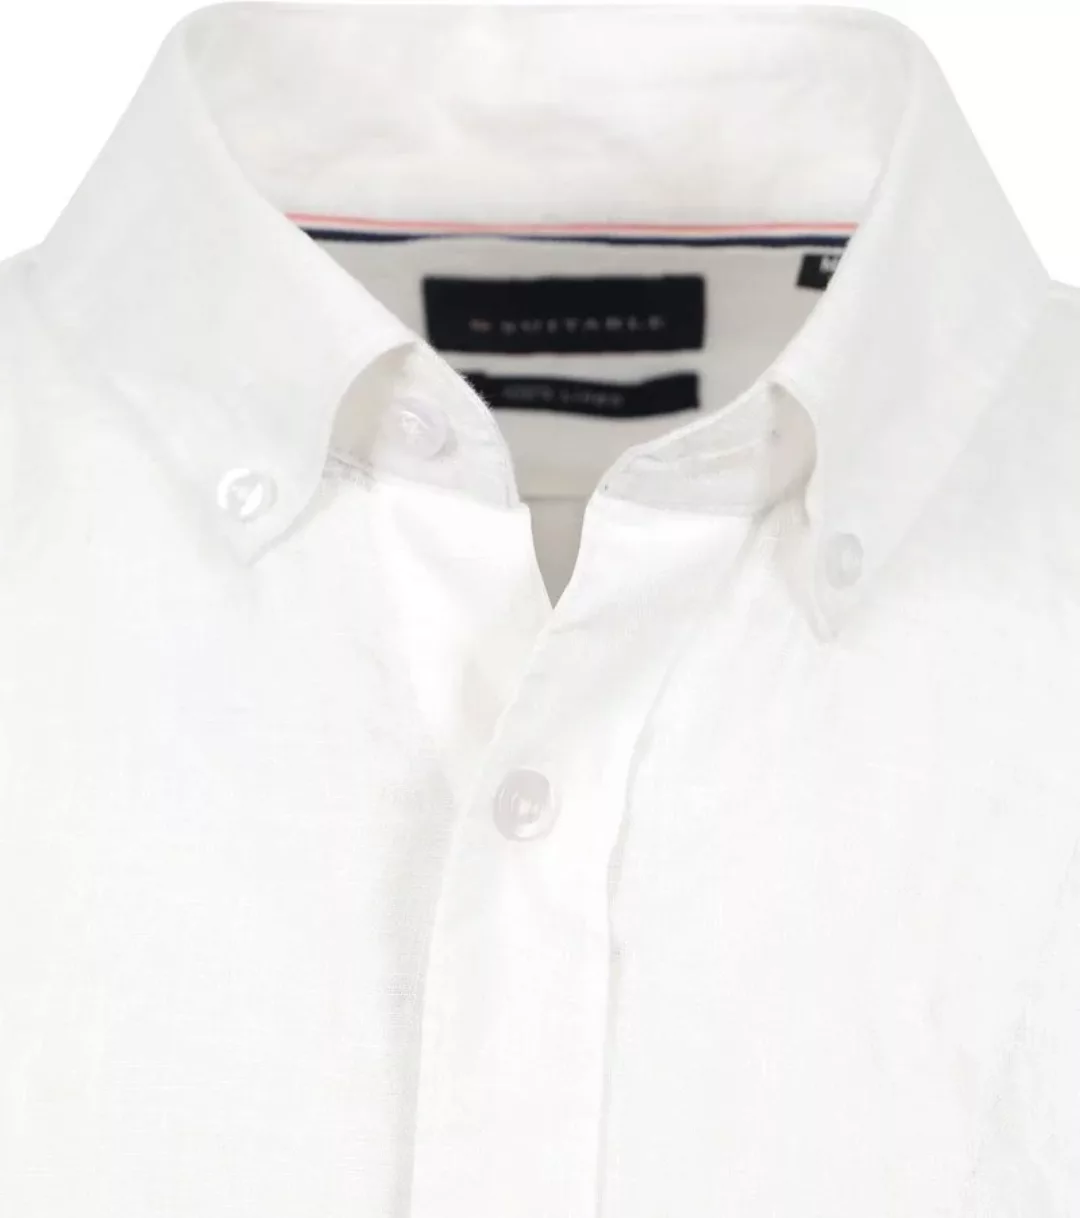 Suitable Hemd Leinen Weiß - Größe M günstig online kaufen